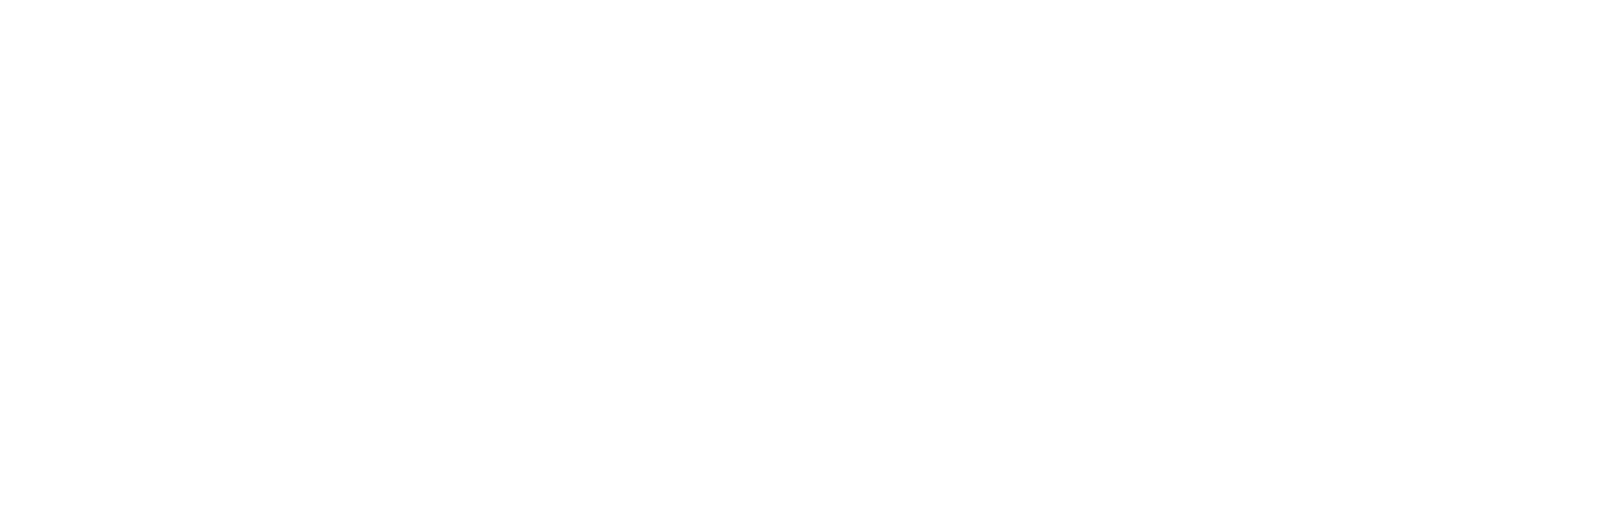 Enterprise Products logo grand pour les fonds sombres (PNG transparent)